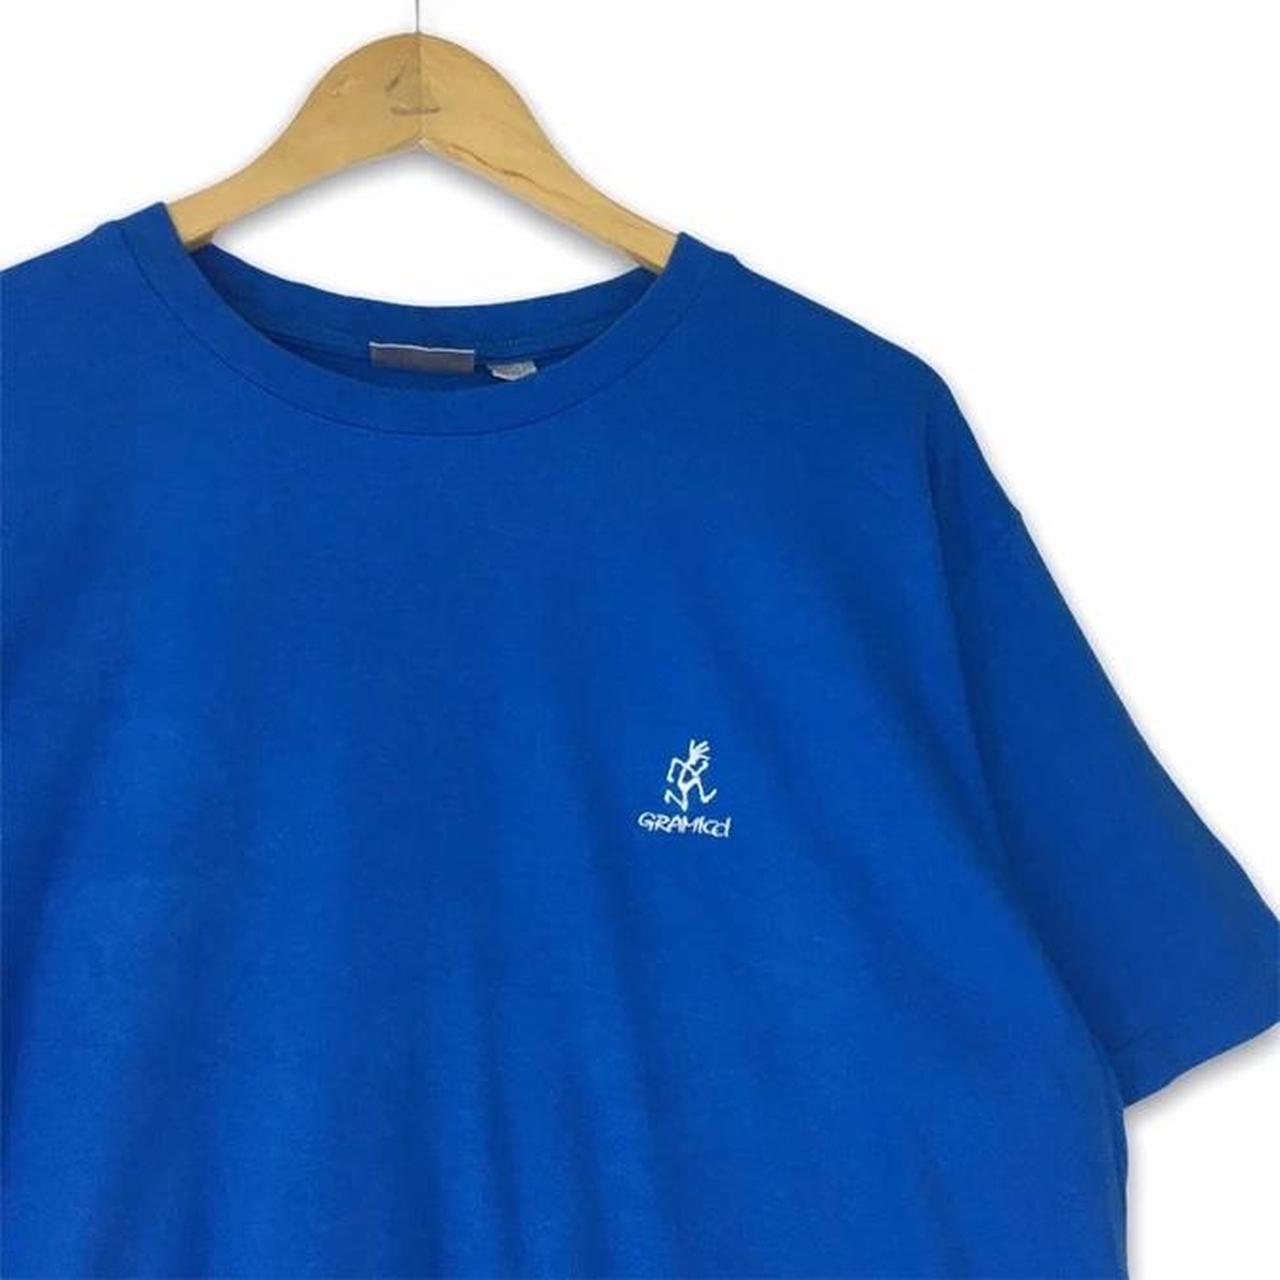 Rare design Gramicci Big logo men tshirt blue... - Depop